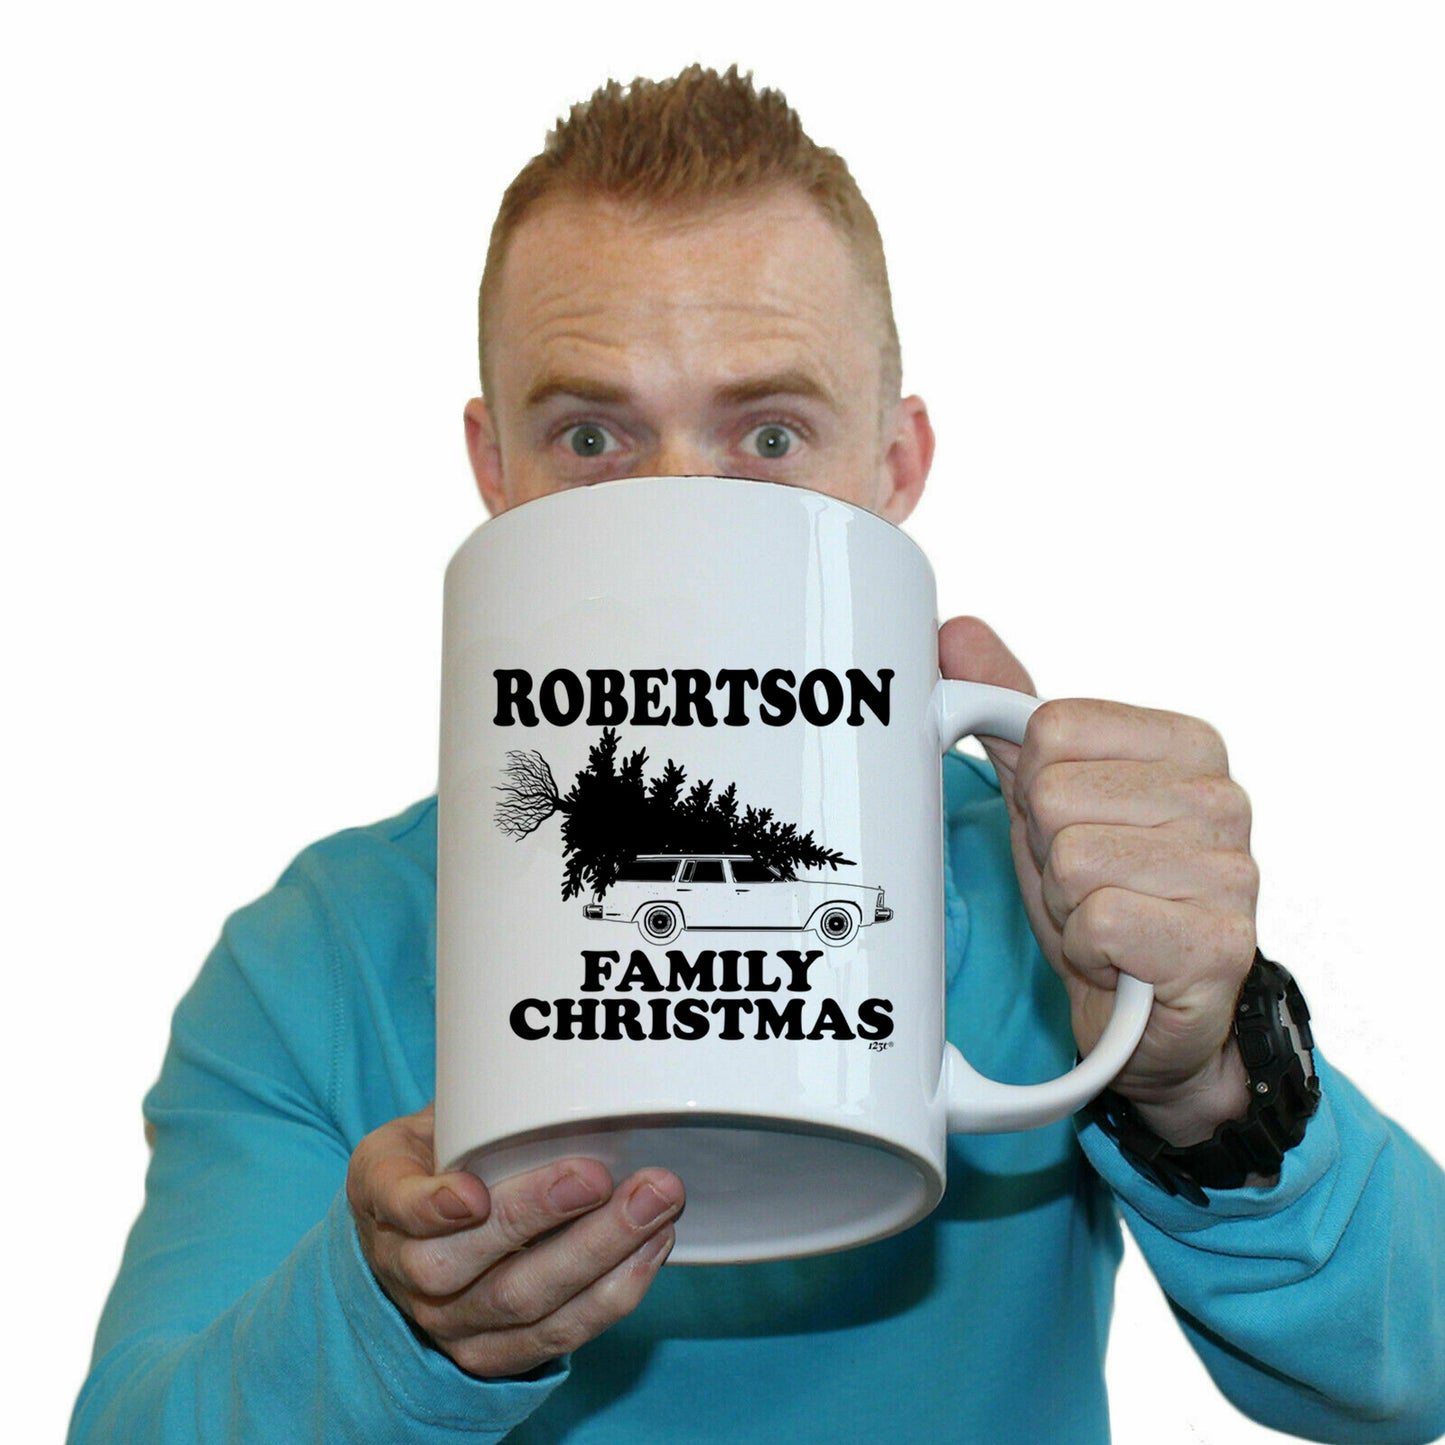 The Christmas Hub - Family Christmas Robertson - Funny Giant 2 Litre Mug